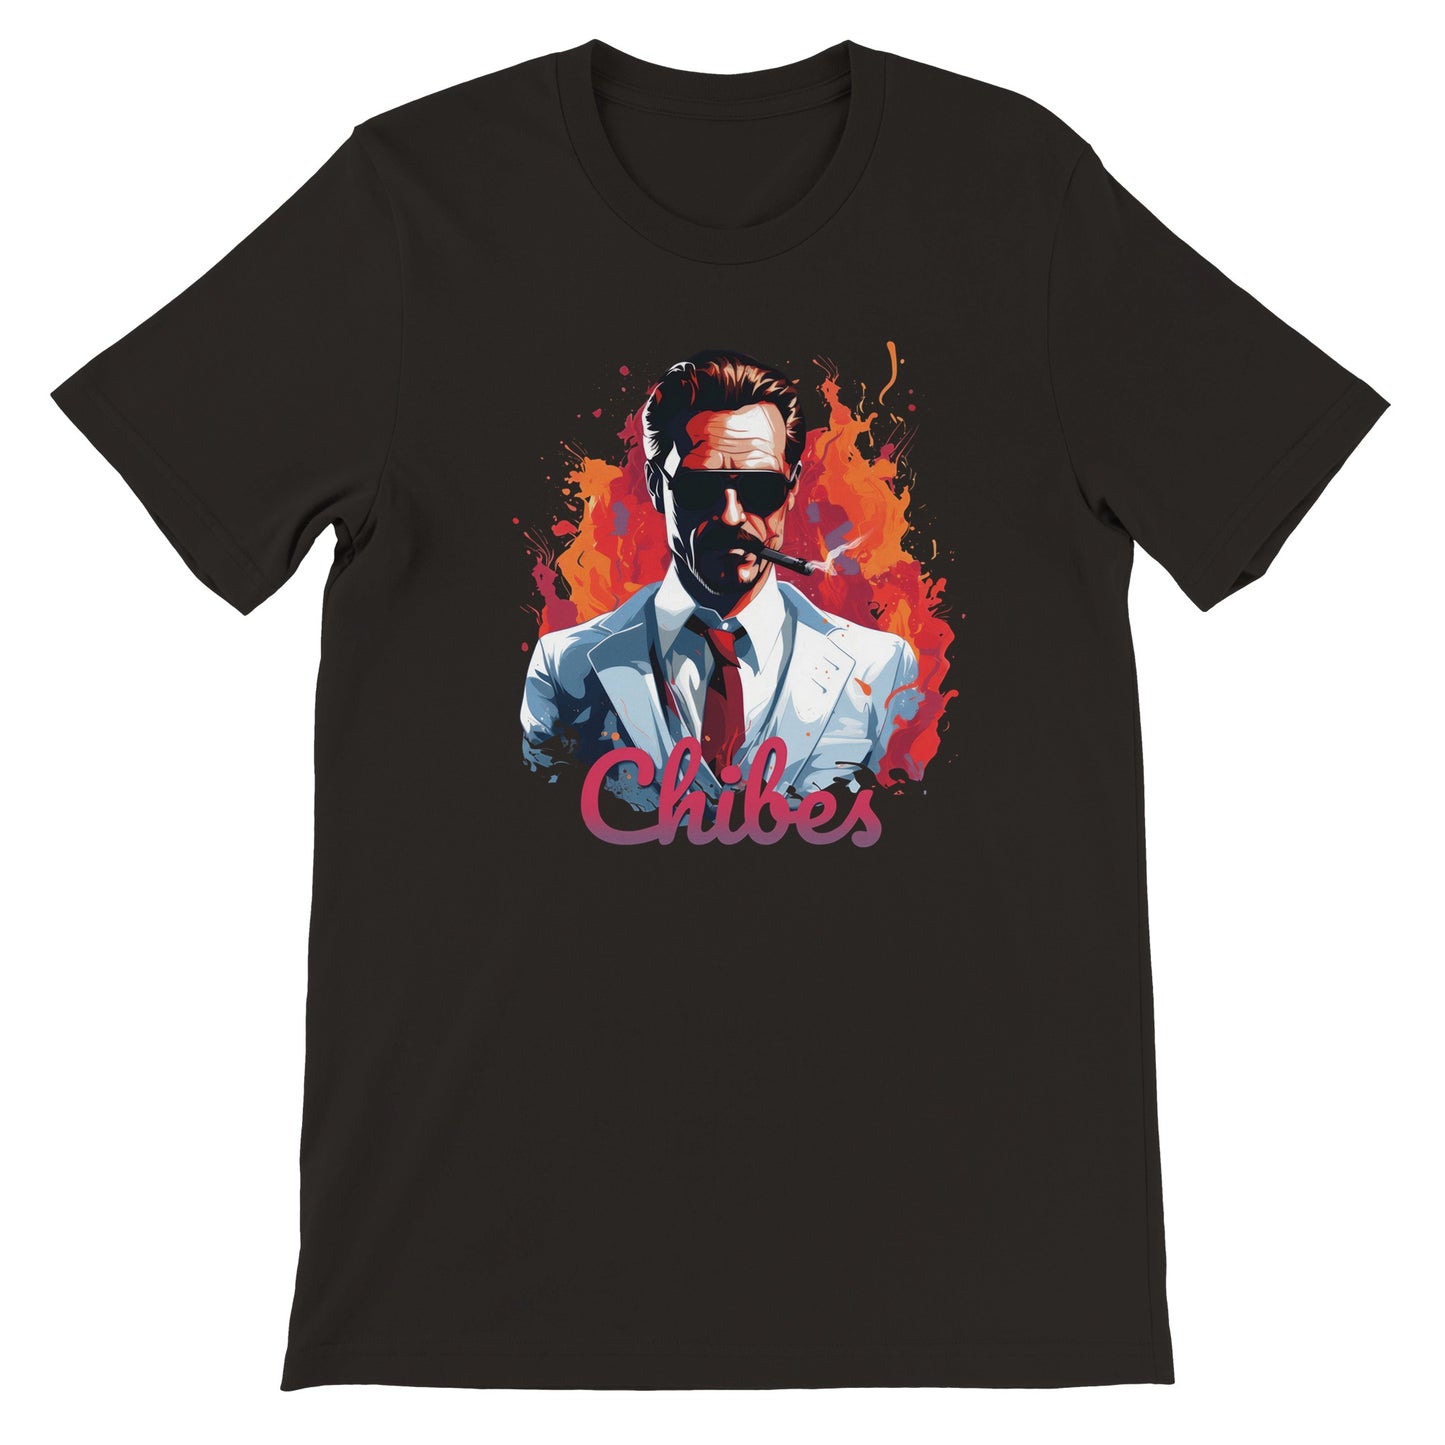 'Miami Vice' Chibes Premium Black T-shirt - Unisex